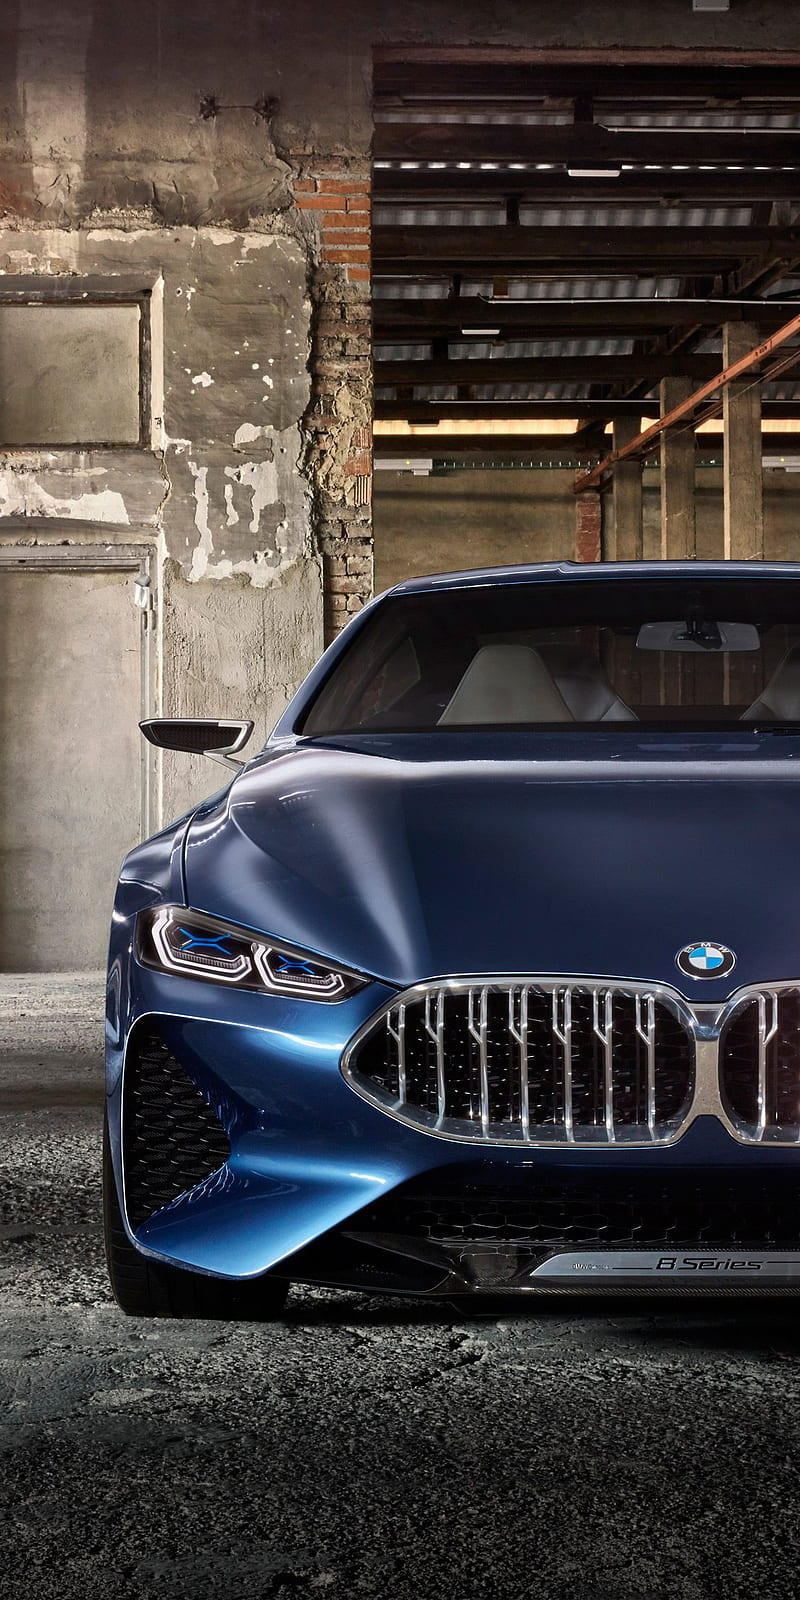 Siêu xe BMW 8 Series: Bạn yêu thích tốc độ và sự sang trọng? Siêu xe BMW 8 Series là sự lựa chọn hoàn hảo dành cho bạn. Với thiết kế đẳng cấp và công nghệ tiên tiến, chiếc xe BMW 8 Series sẽ đưa bạn đến với những trải nghiệm tuyệt vời trên những cung đường đầy thử thách.